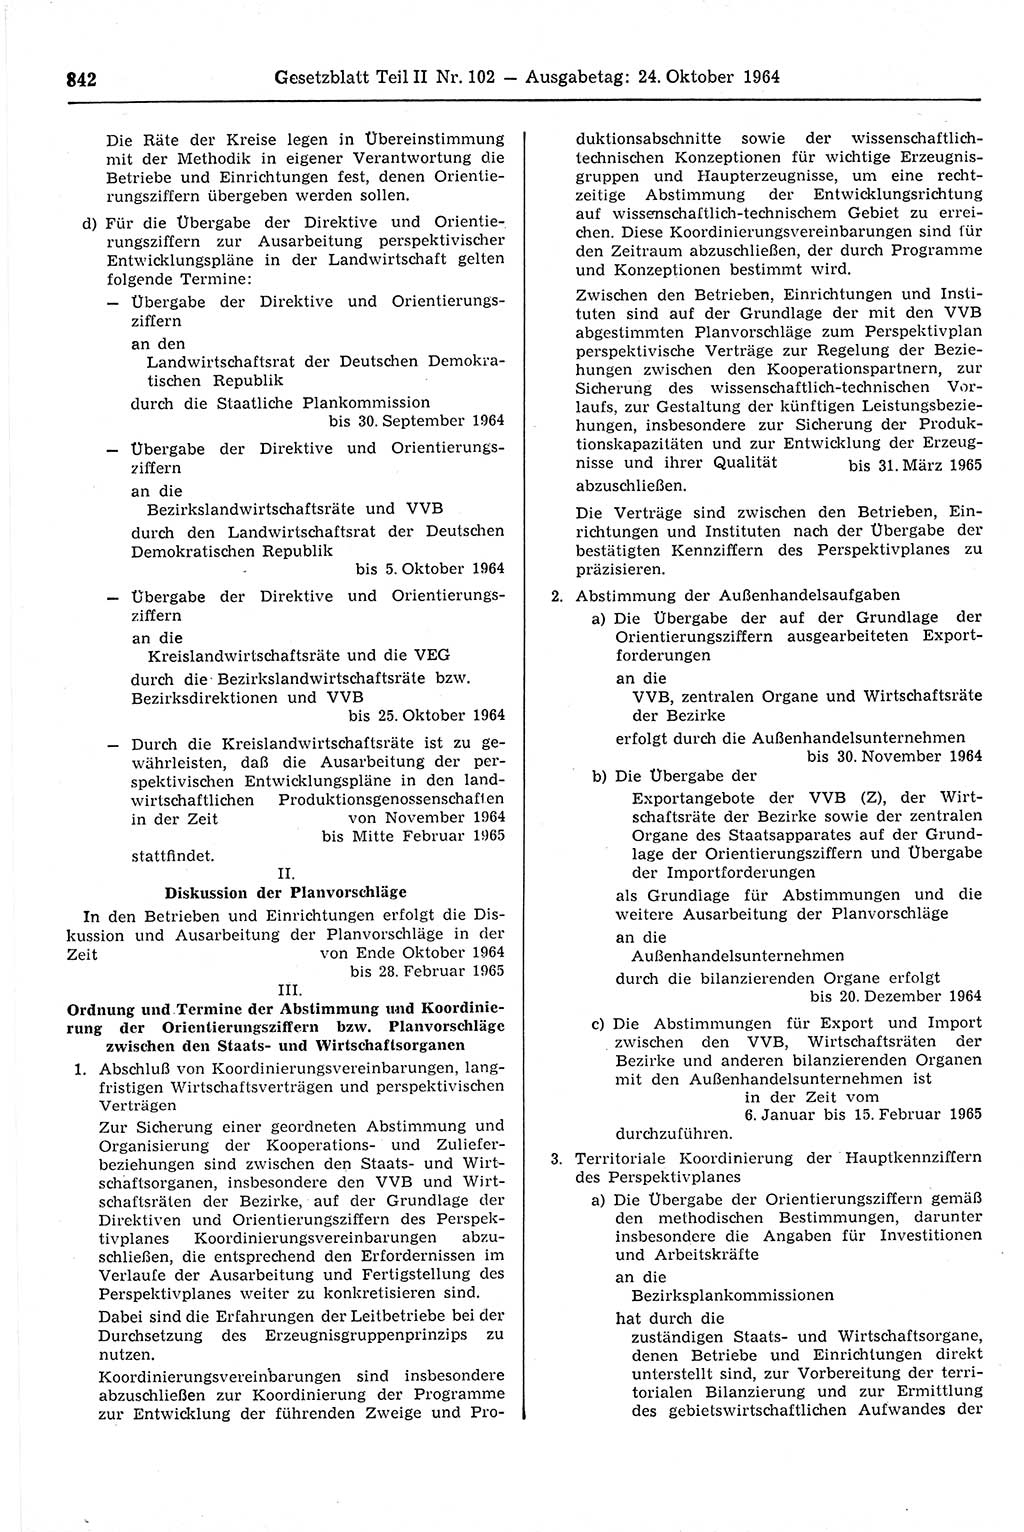 Gesetzblatt (GBl.) der Deutschen Demokratischen Republik (DDR) Teil ⅠⅠ 1964, Seite 842 (GBl. DDR ⅠⅠ 1964, S. 842)